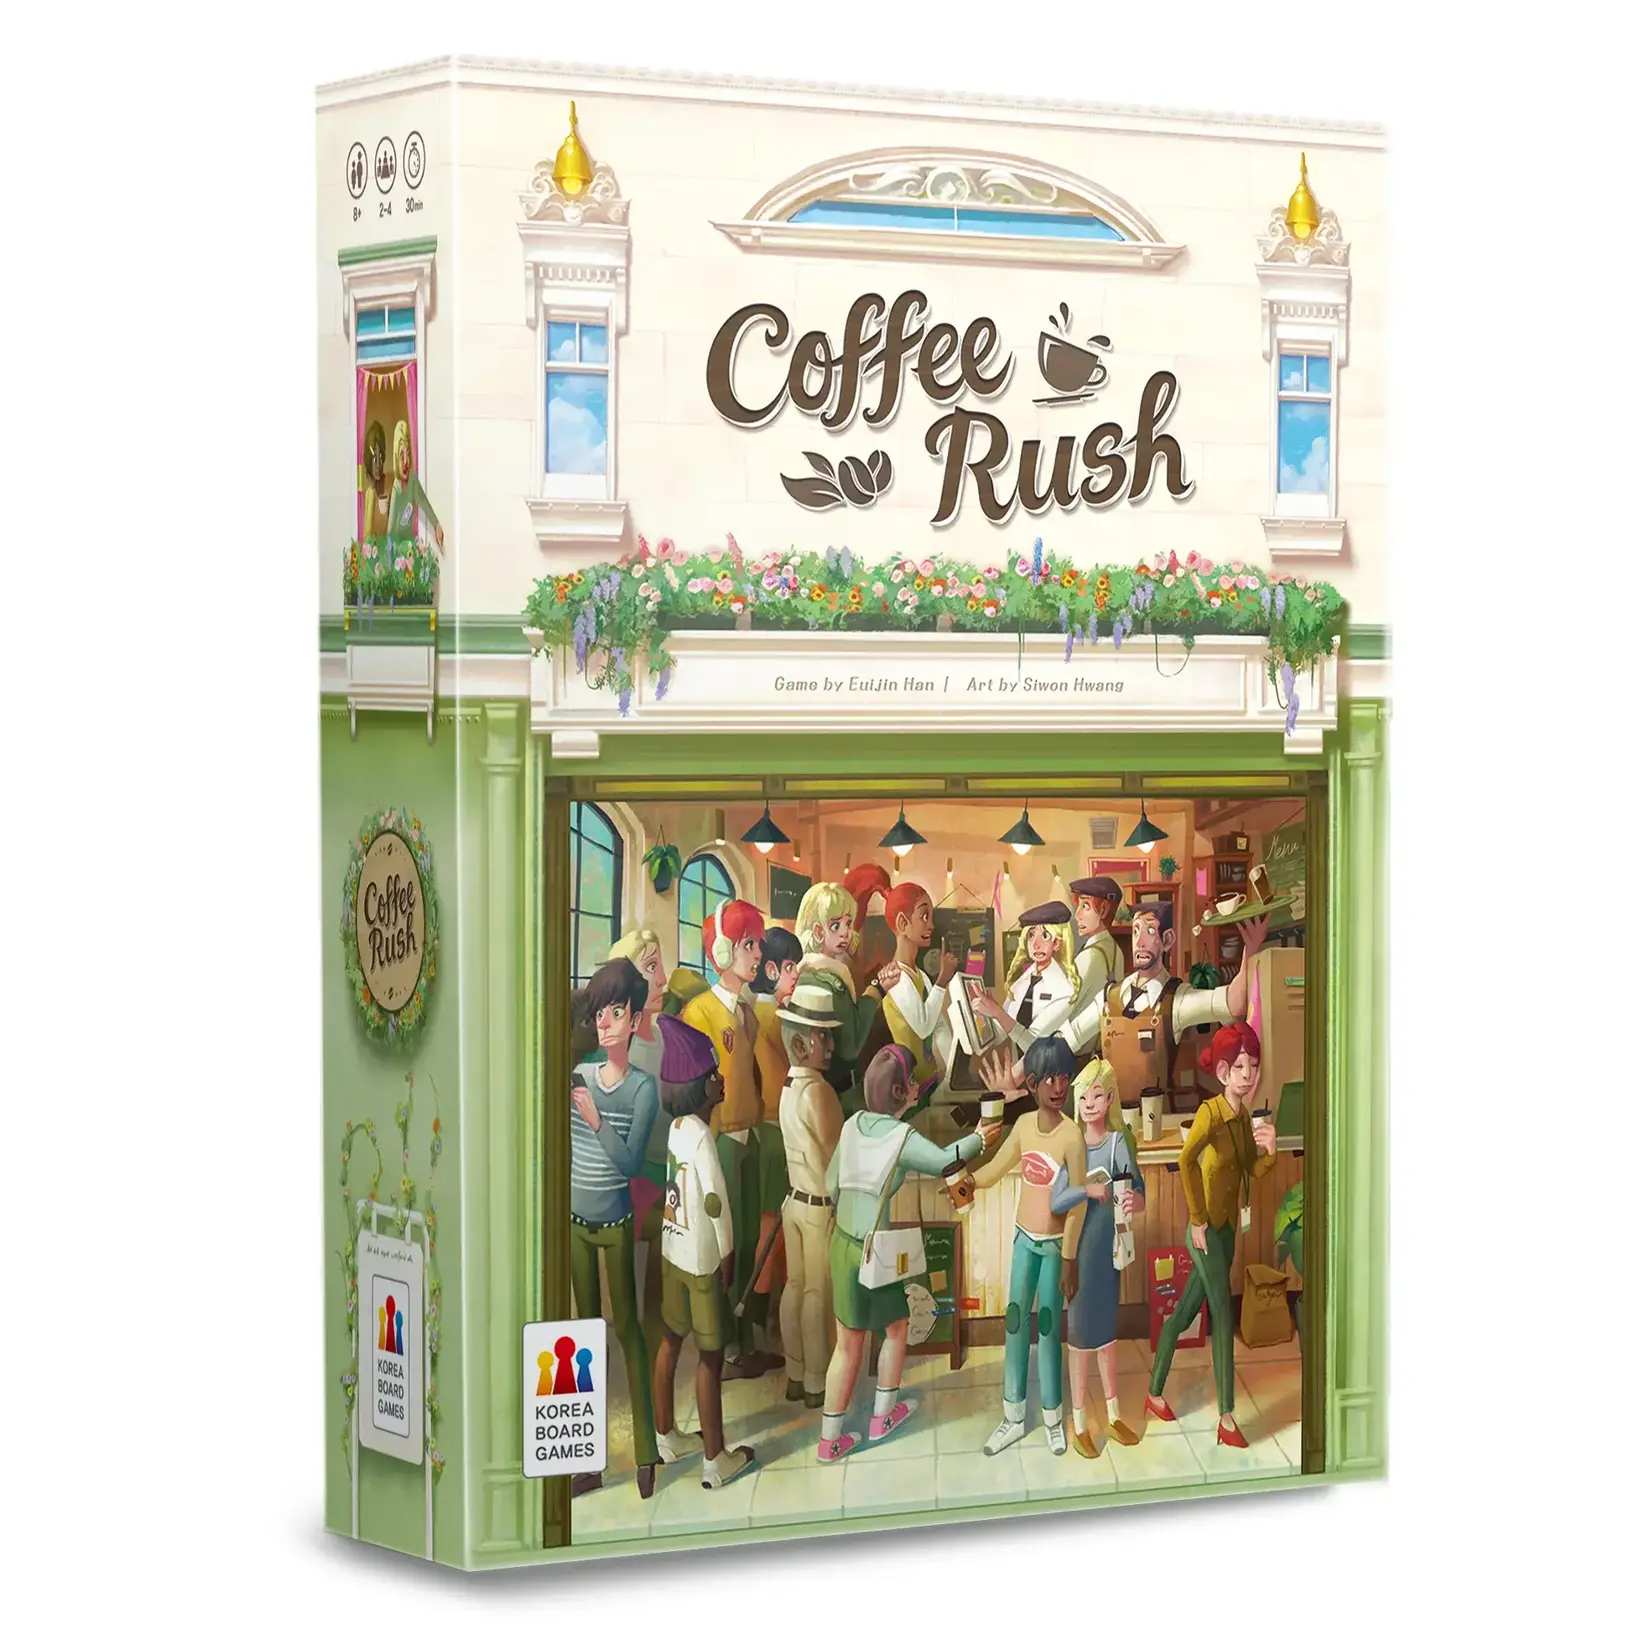 Korea Board Games Coffee Rush